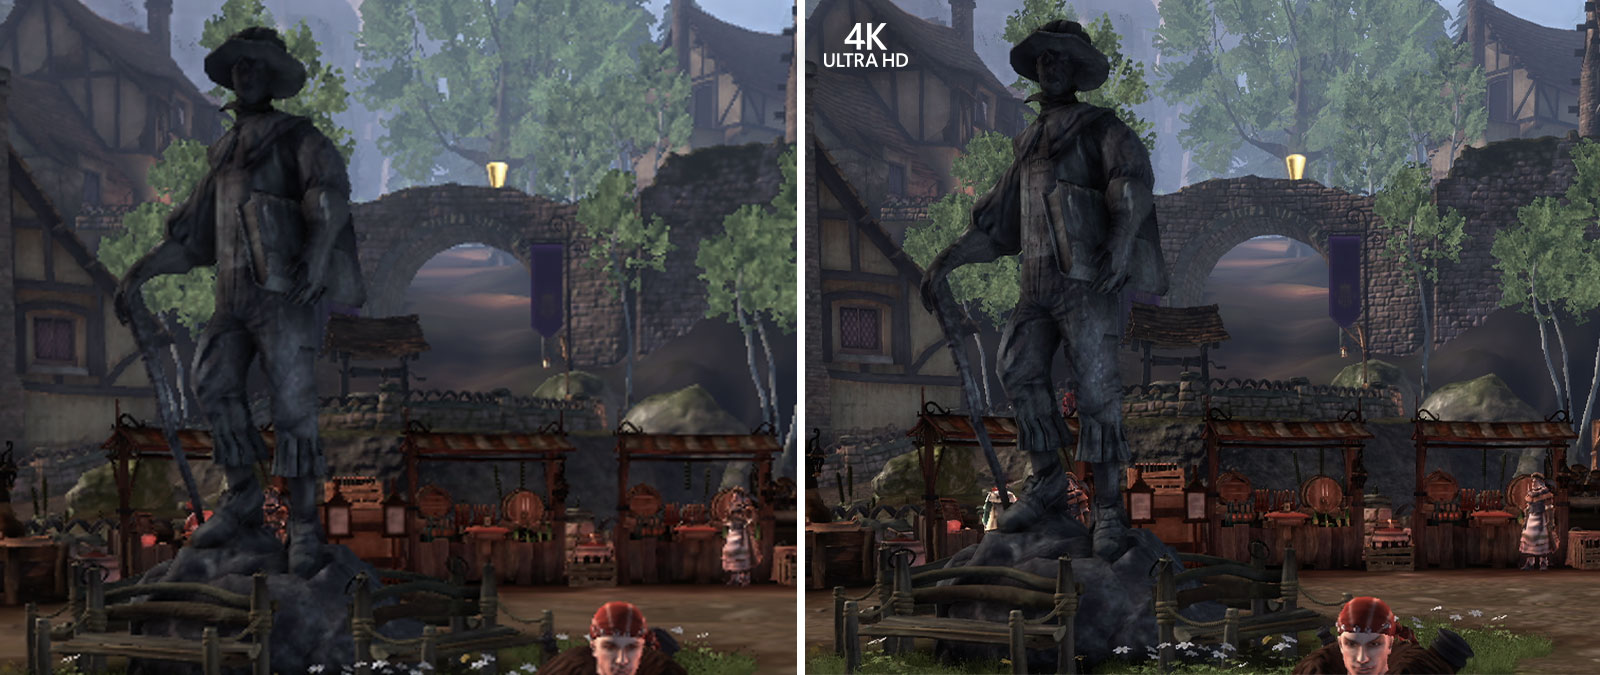 4K Ultra HD, comparaison de captures d’écran de Fable Anniversary zoomées pour voir les détails en arrière-plan